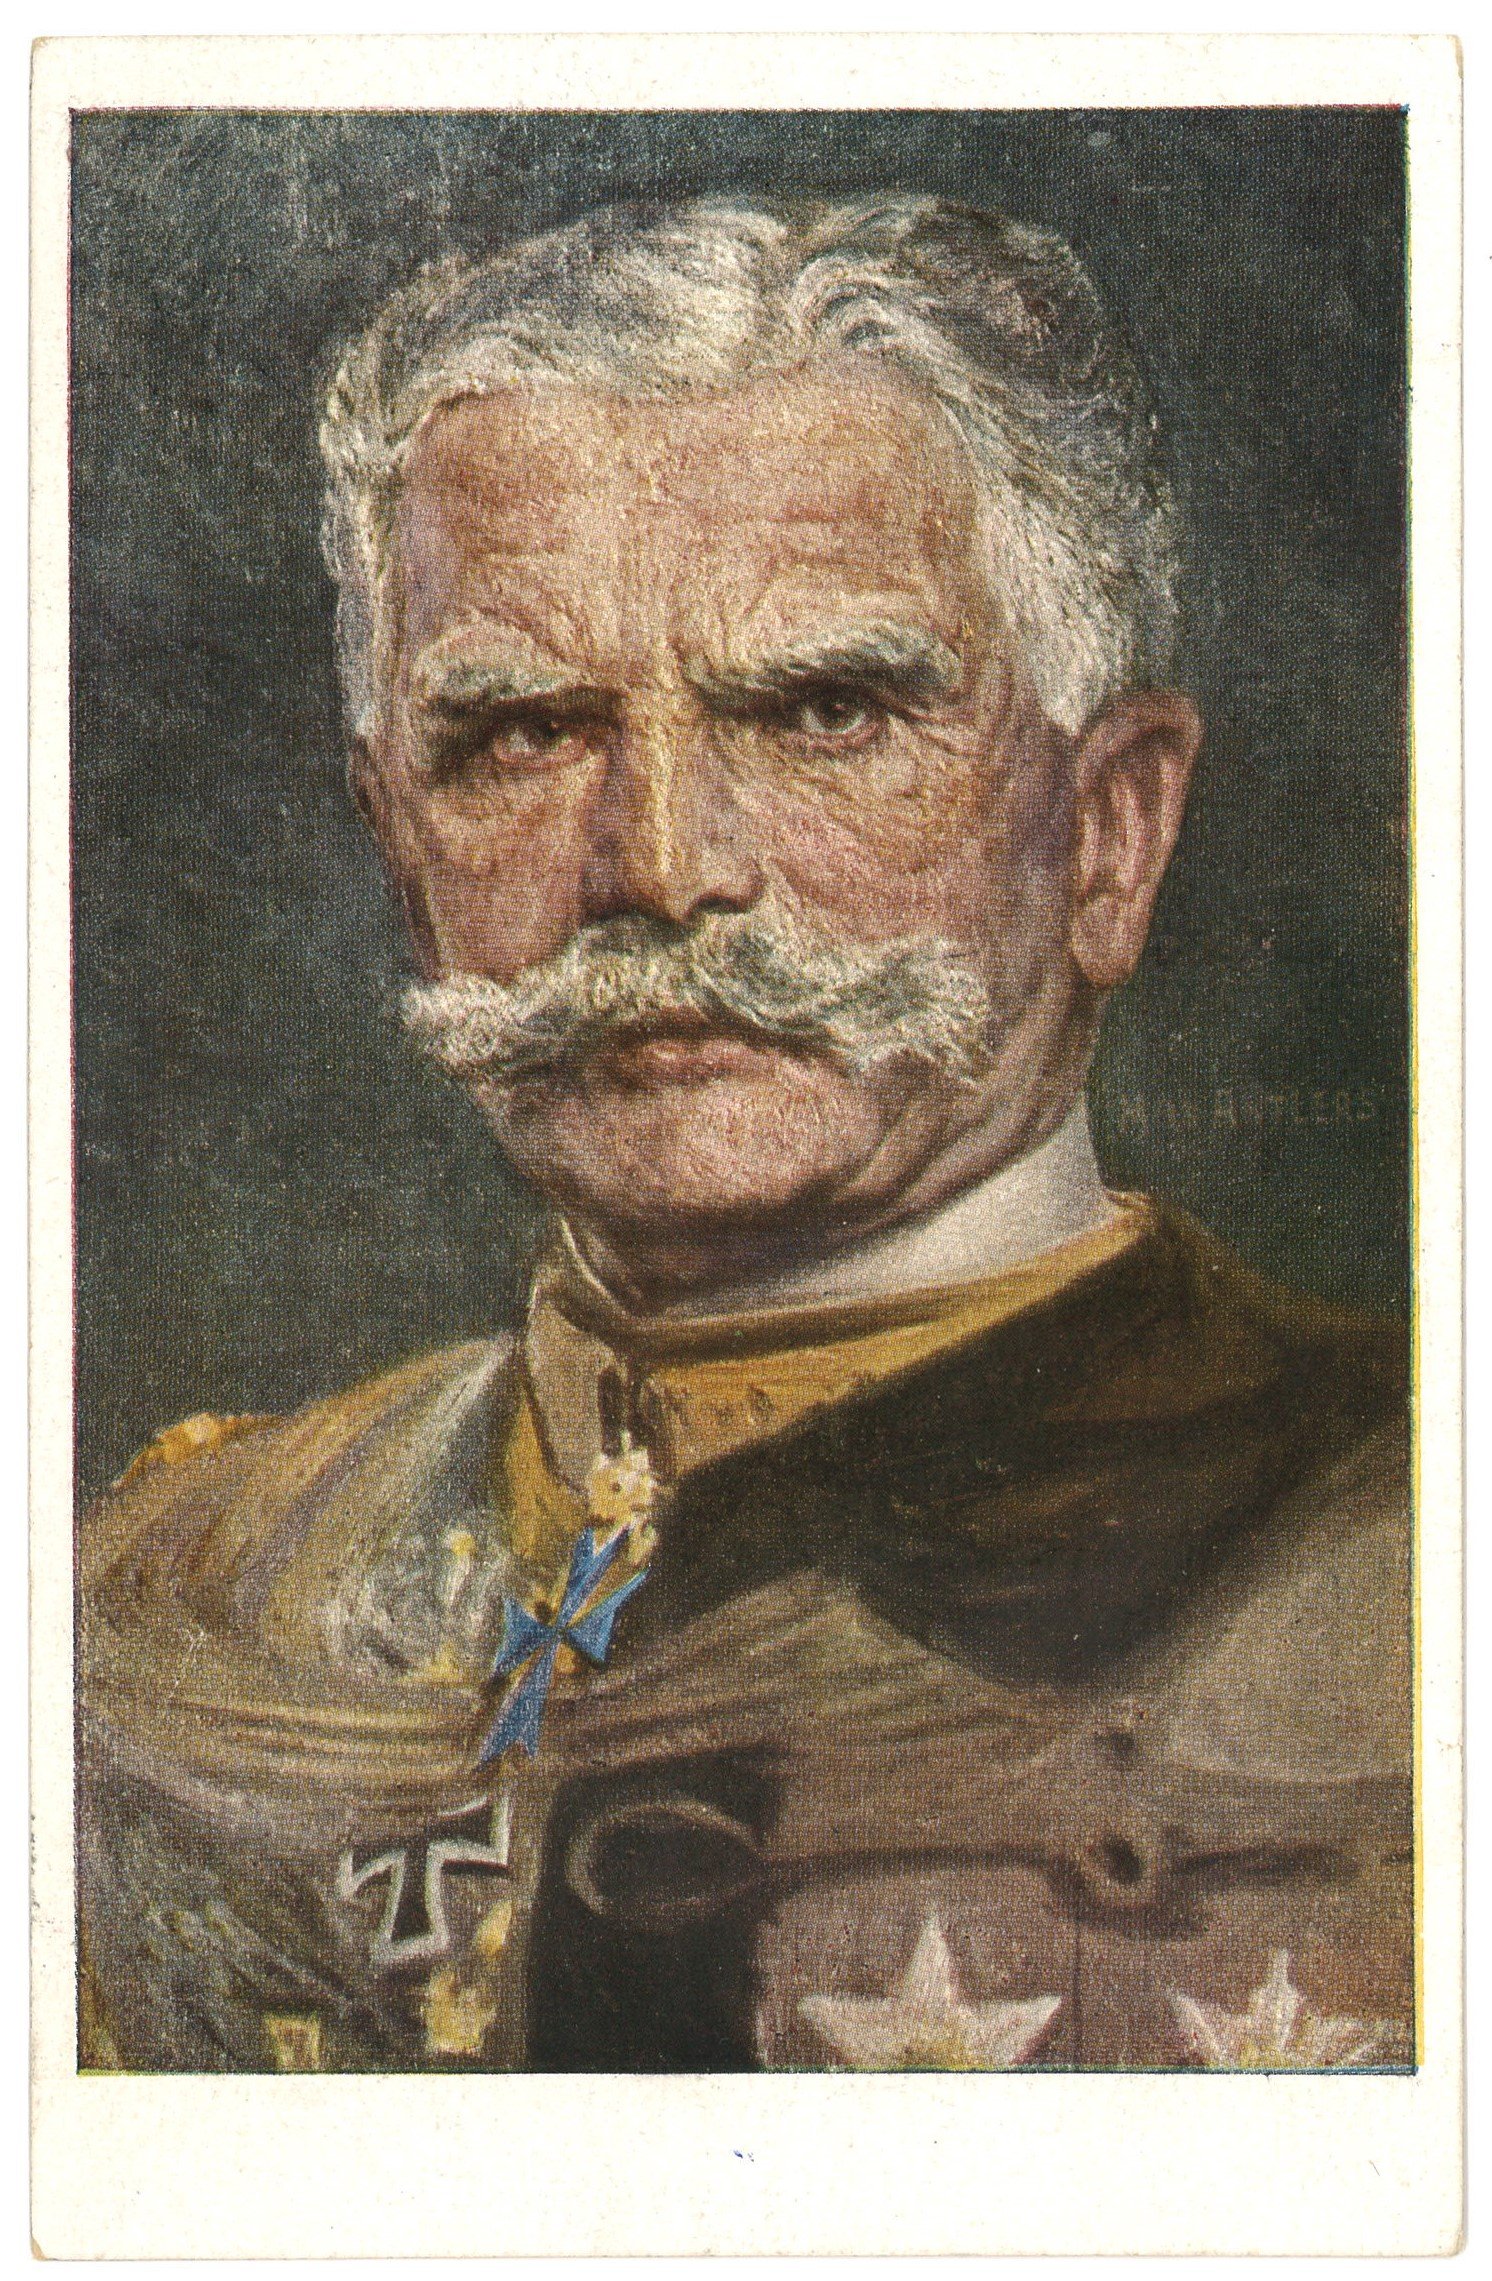 Mackensen, August von (1849–1945), preuß. Generalfeldmarschall (Gemälde von Max Antlers) (Landesgeschichtliche Vereinigung für die Mark Brandenburg e.V. CC BY)